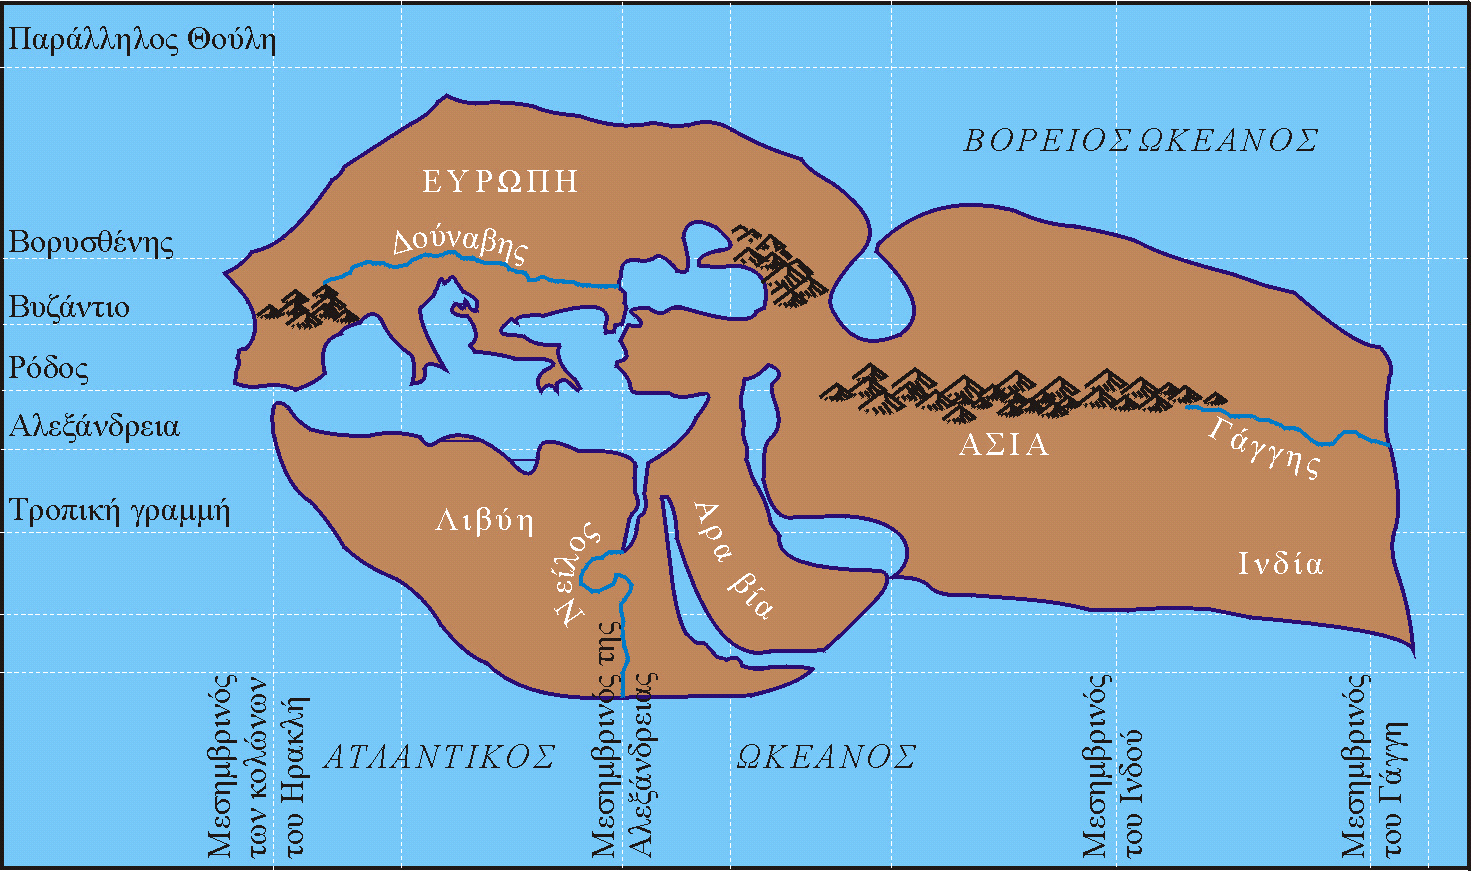 ΕΞΕΛΙΞΗ ΤΗΣ ΩΚΕΑΝΟΓΡΑΦΙΑΣ Περίοδος των πρώτων επιστημονικών προσεγγίσεων των ωκεανών και θαλασσών (500 π.χ. έως 15ο αιώνα μ.χ.). Ο χάρτης του Ερατοσθένη (3ος π.χ. αιώνας).